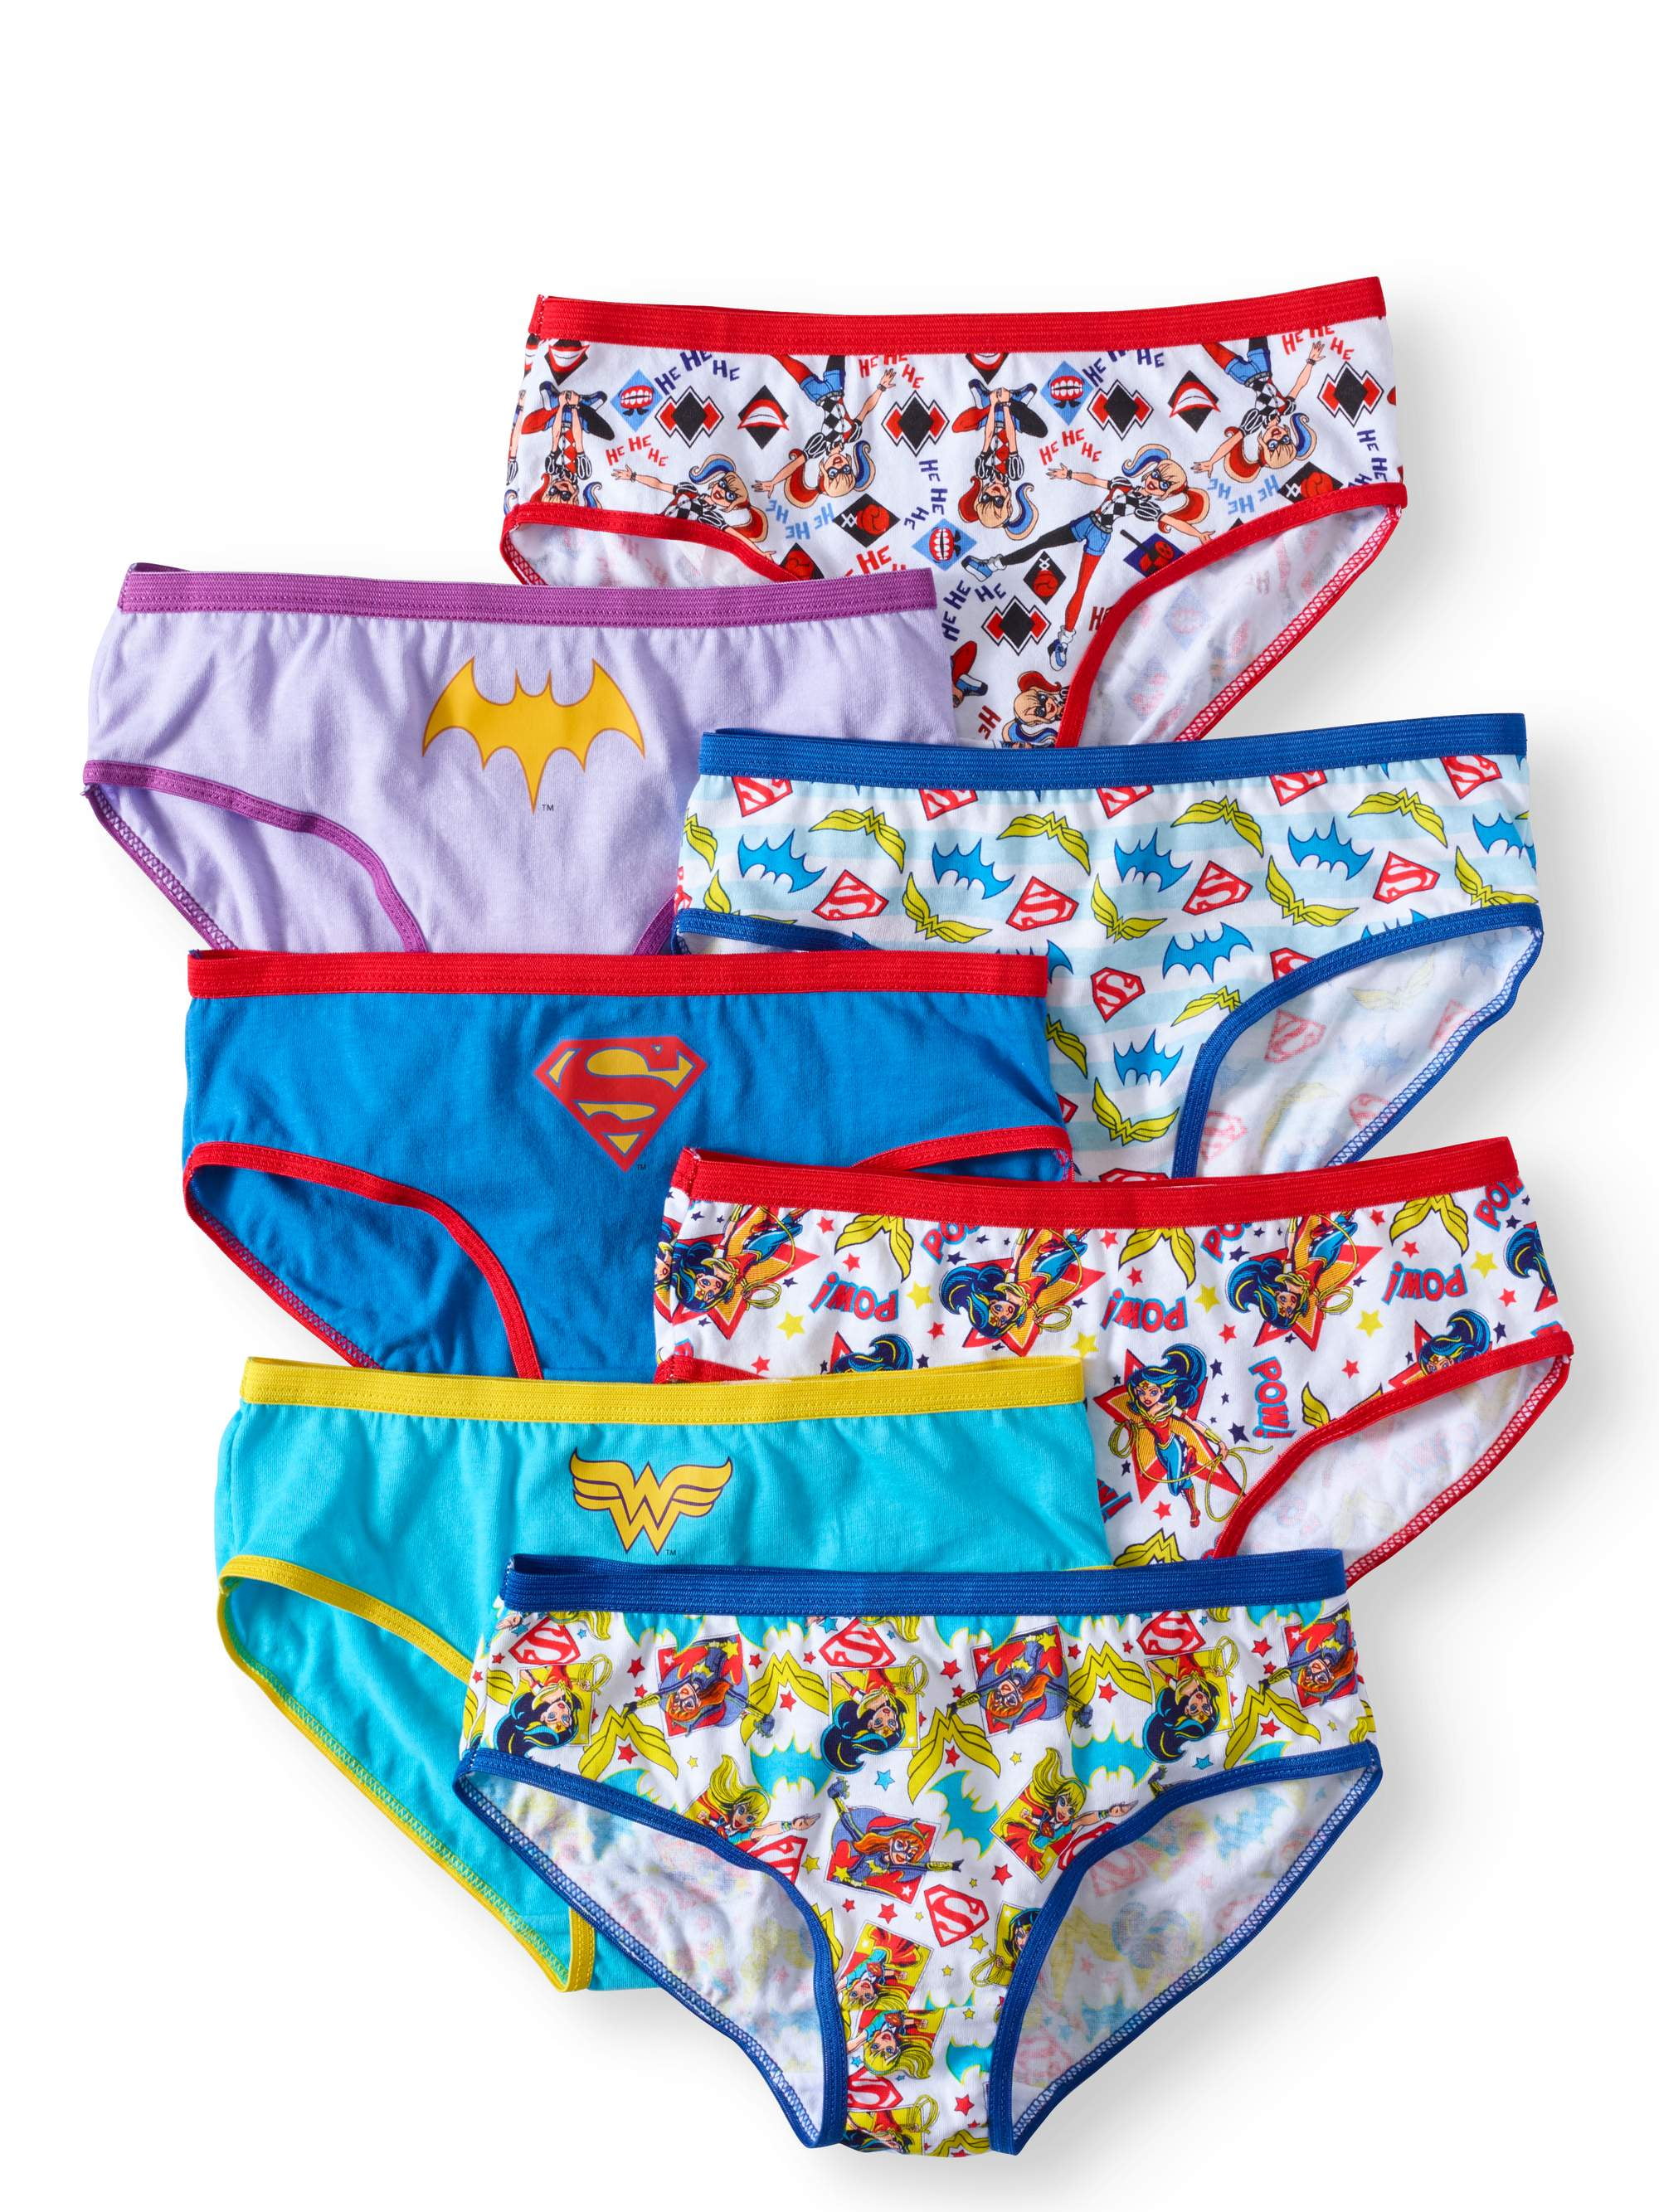 DC Superhero Girls Brief Underwear 7-Pack, Sizes 4-8